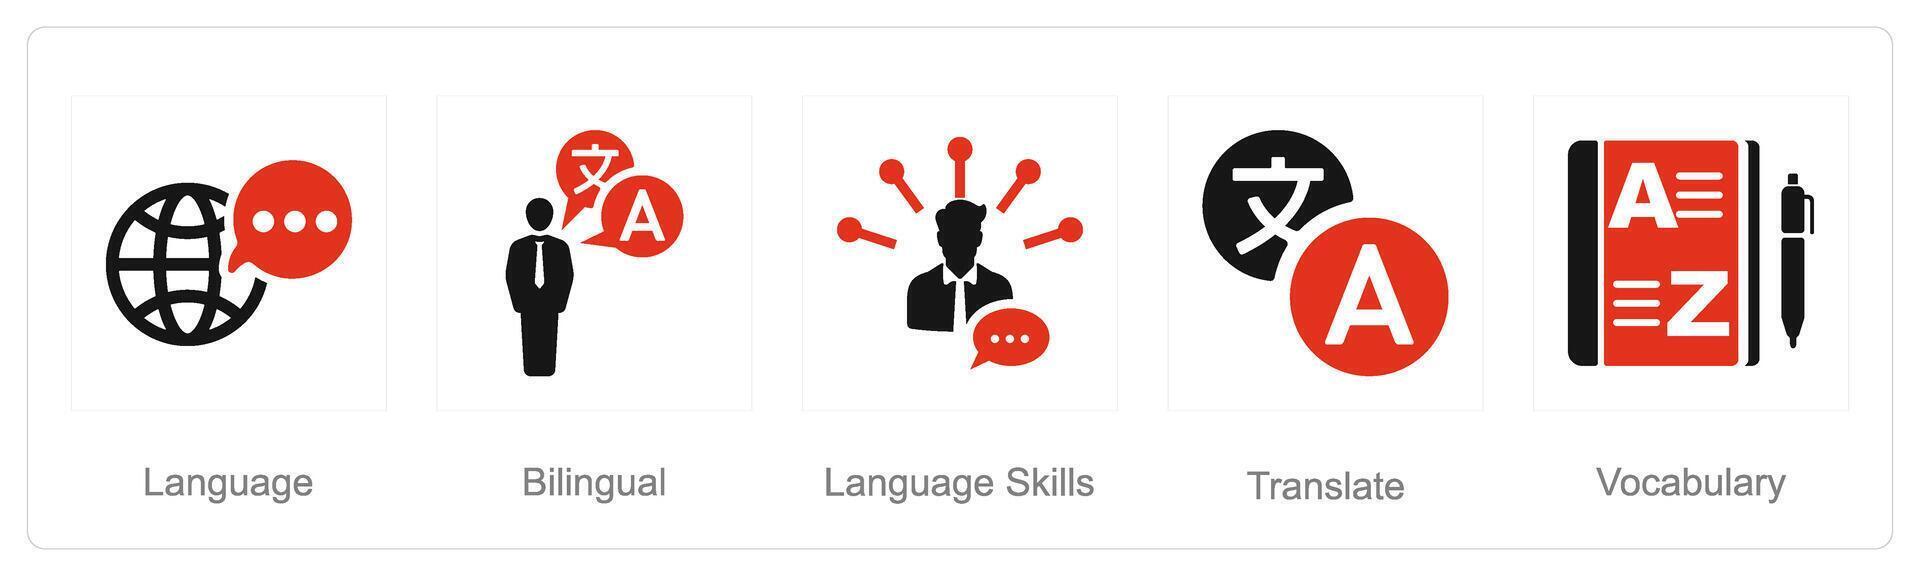 uma conjunto do 5 língua ícones Como linguagem, bilíngue, língua Habilidades vetor